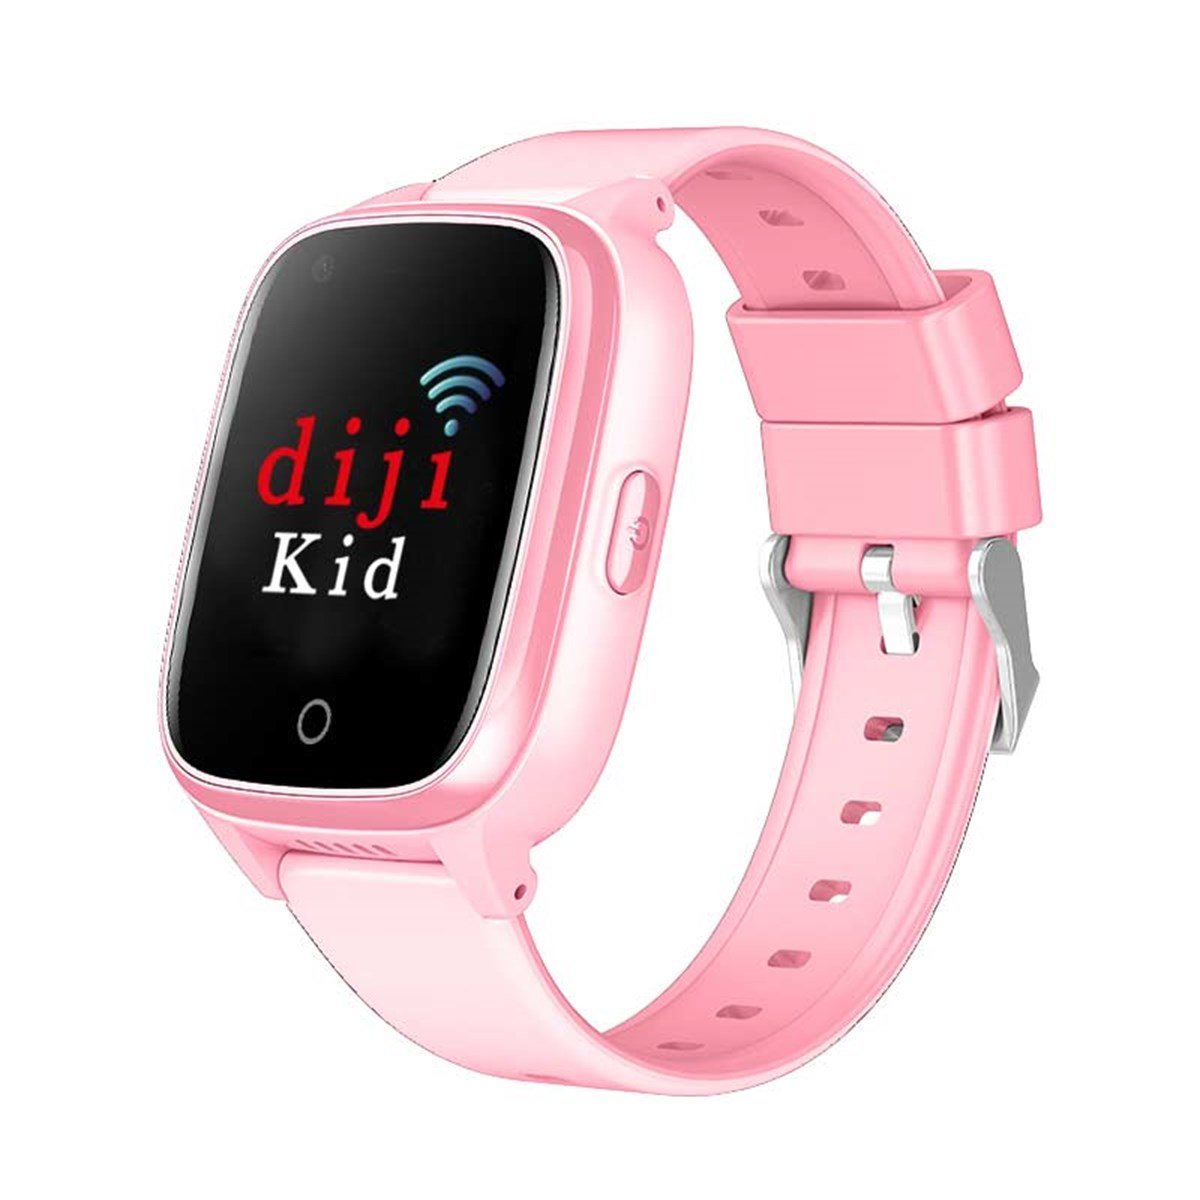 Diji Kid 4.5G Görüntülü Görüşmeli Akıllı Çocuk Saati | Mobicaps